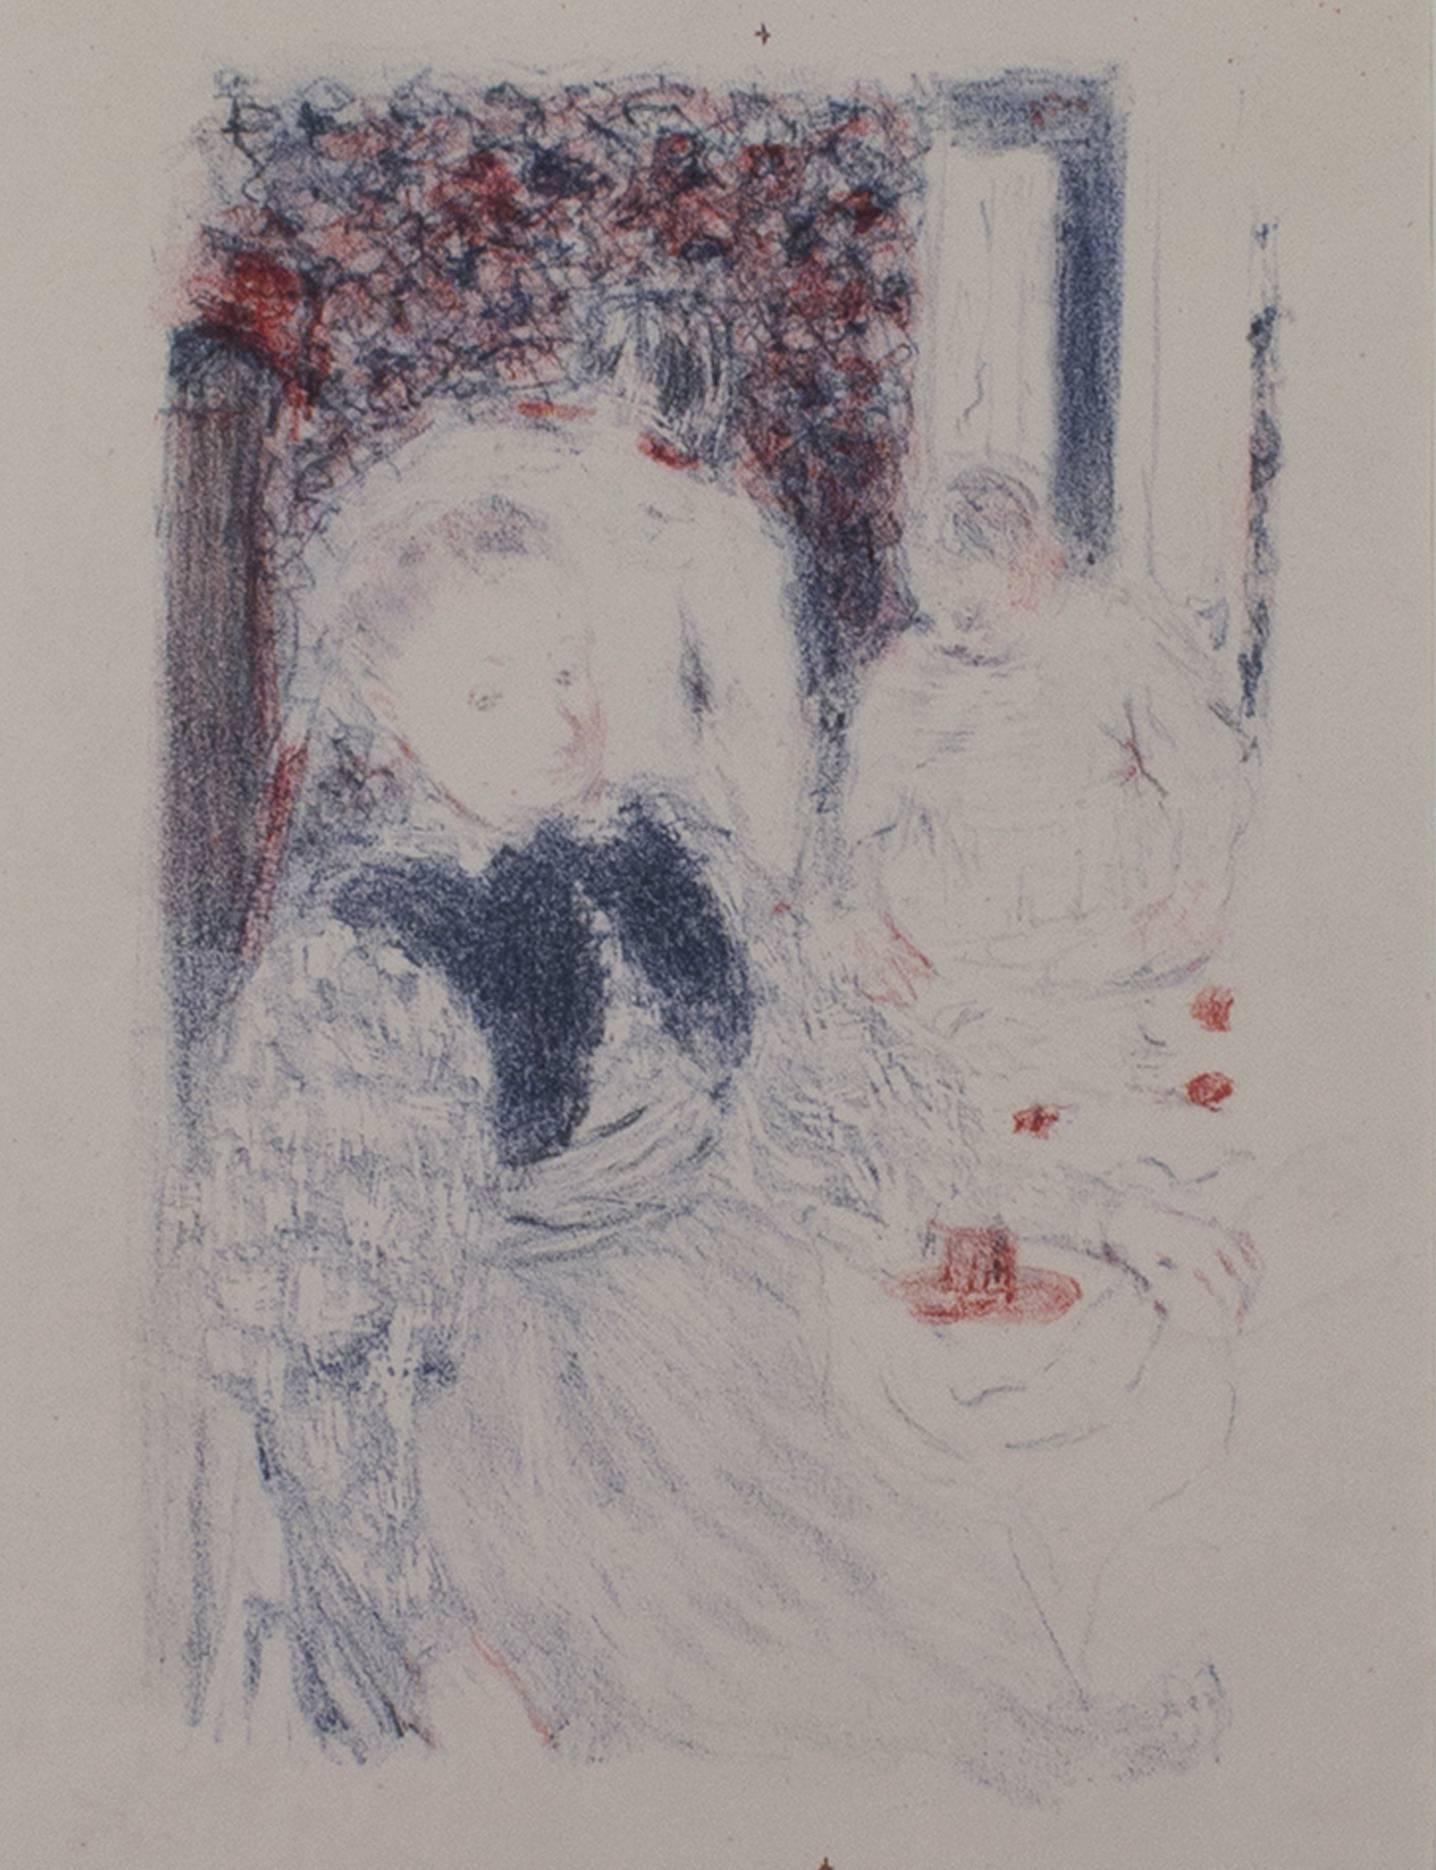 "Le Dejeuner" ist eine seltene originale Farblithographie von Edouard Vuillard. Es zeigt eine fein gekleidete Frau mit weiteren, weniger gut erkennbaren Figuren im Hintergrund. Dieser Druck wurde in Blau und Rot ausgeführt und stammt aus einer